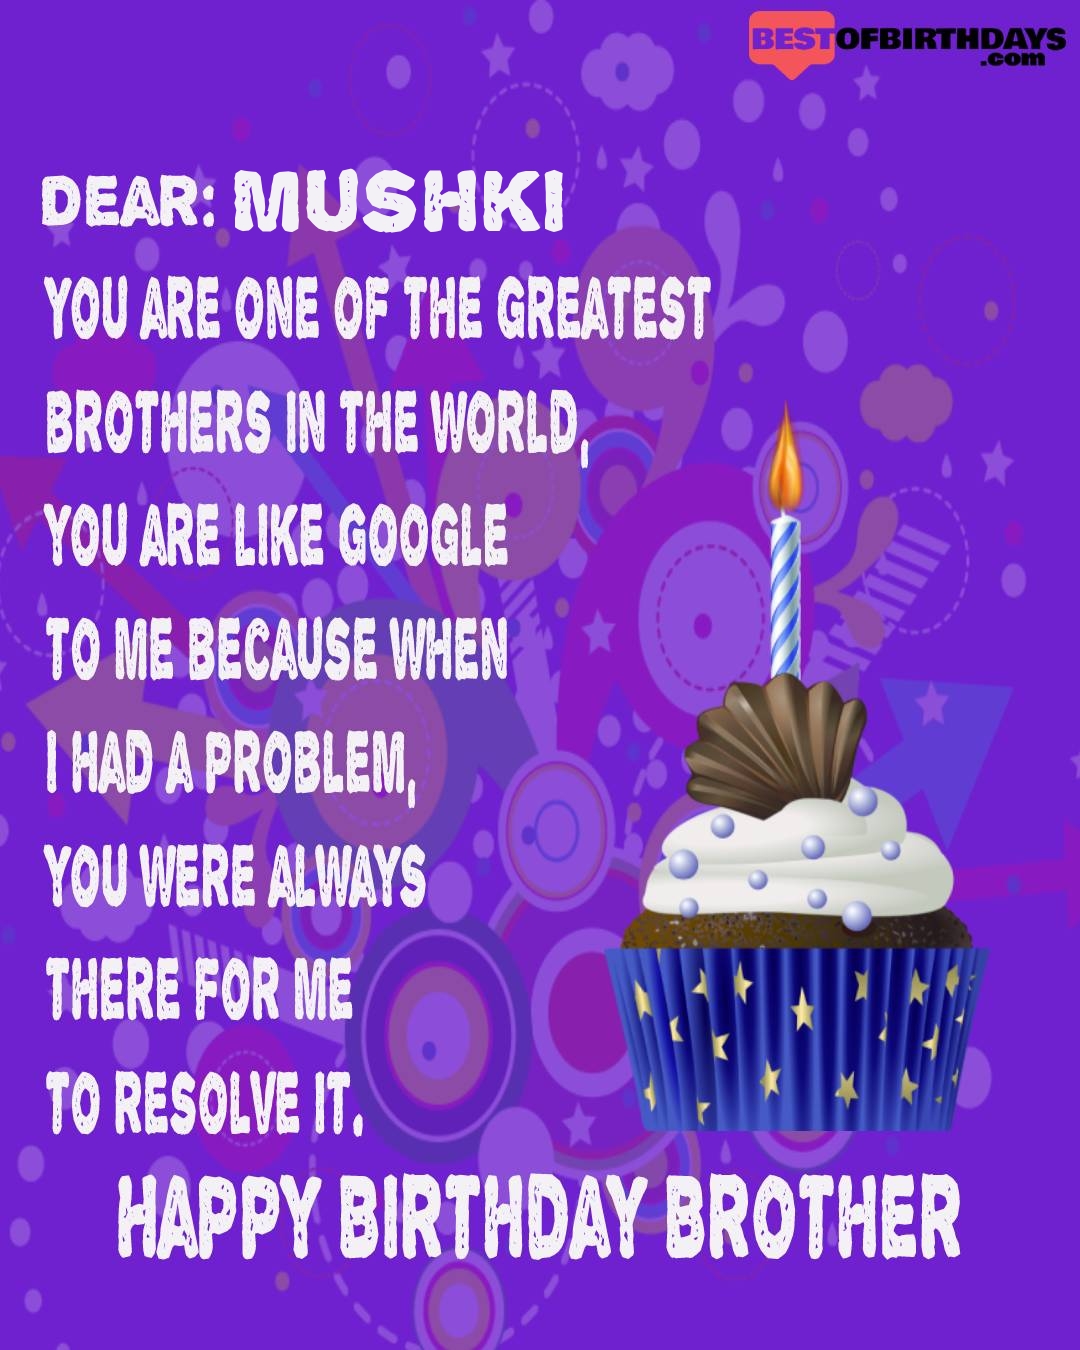 Happy birthday mushki bhai brother bro